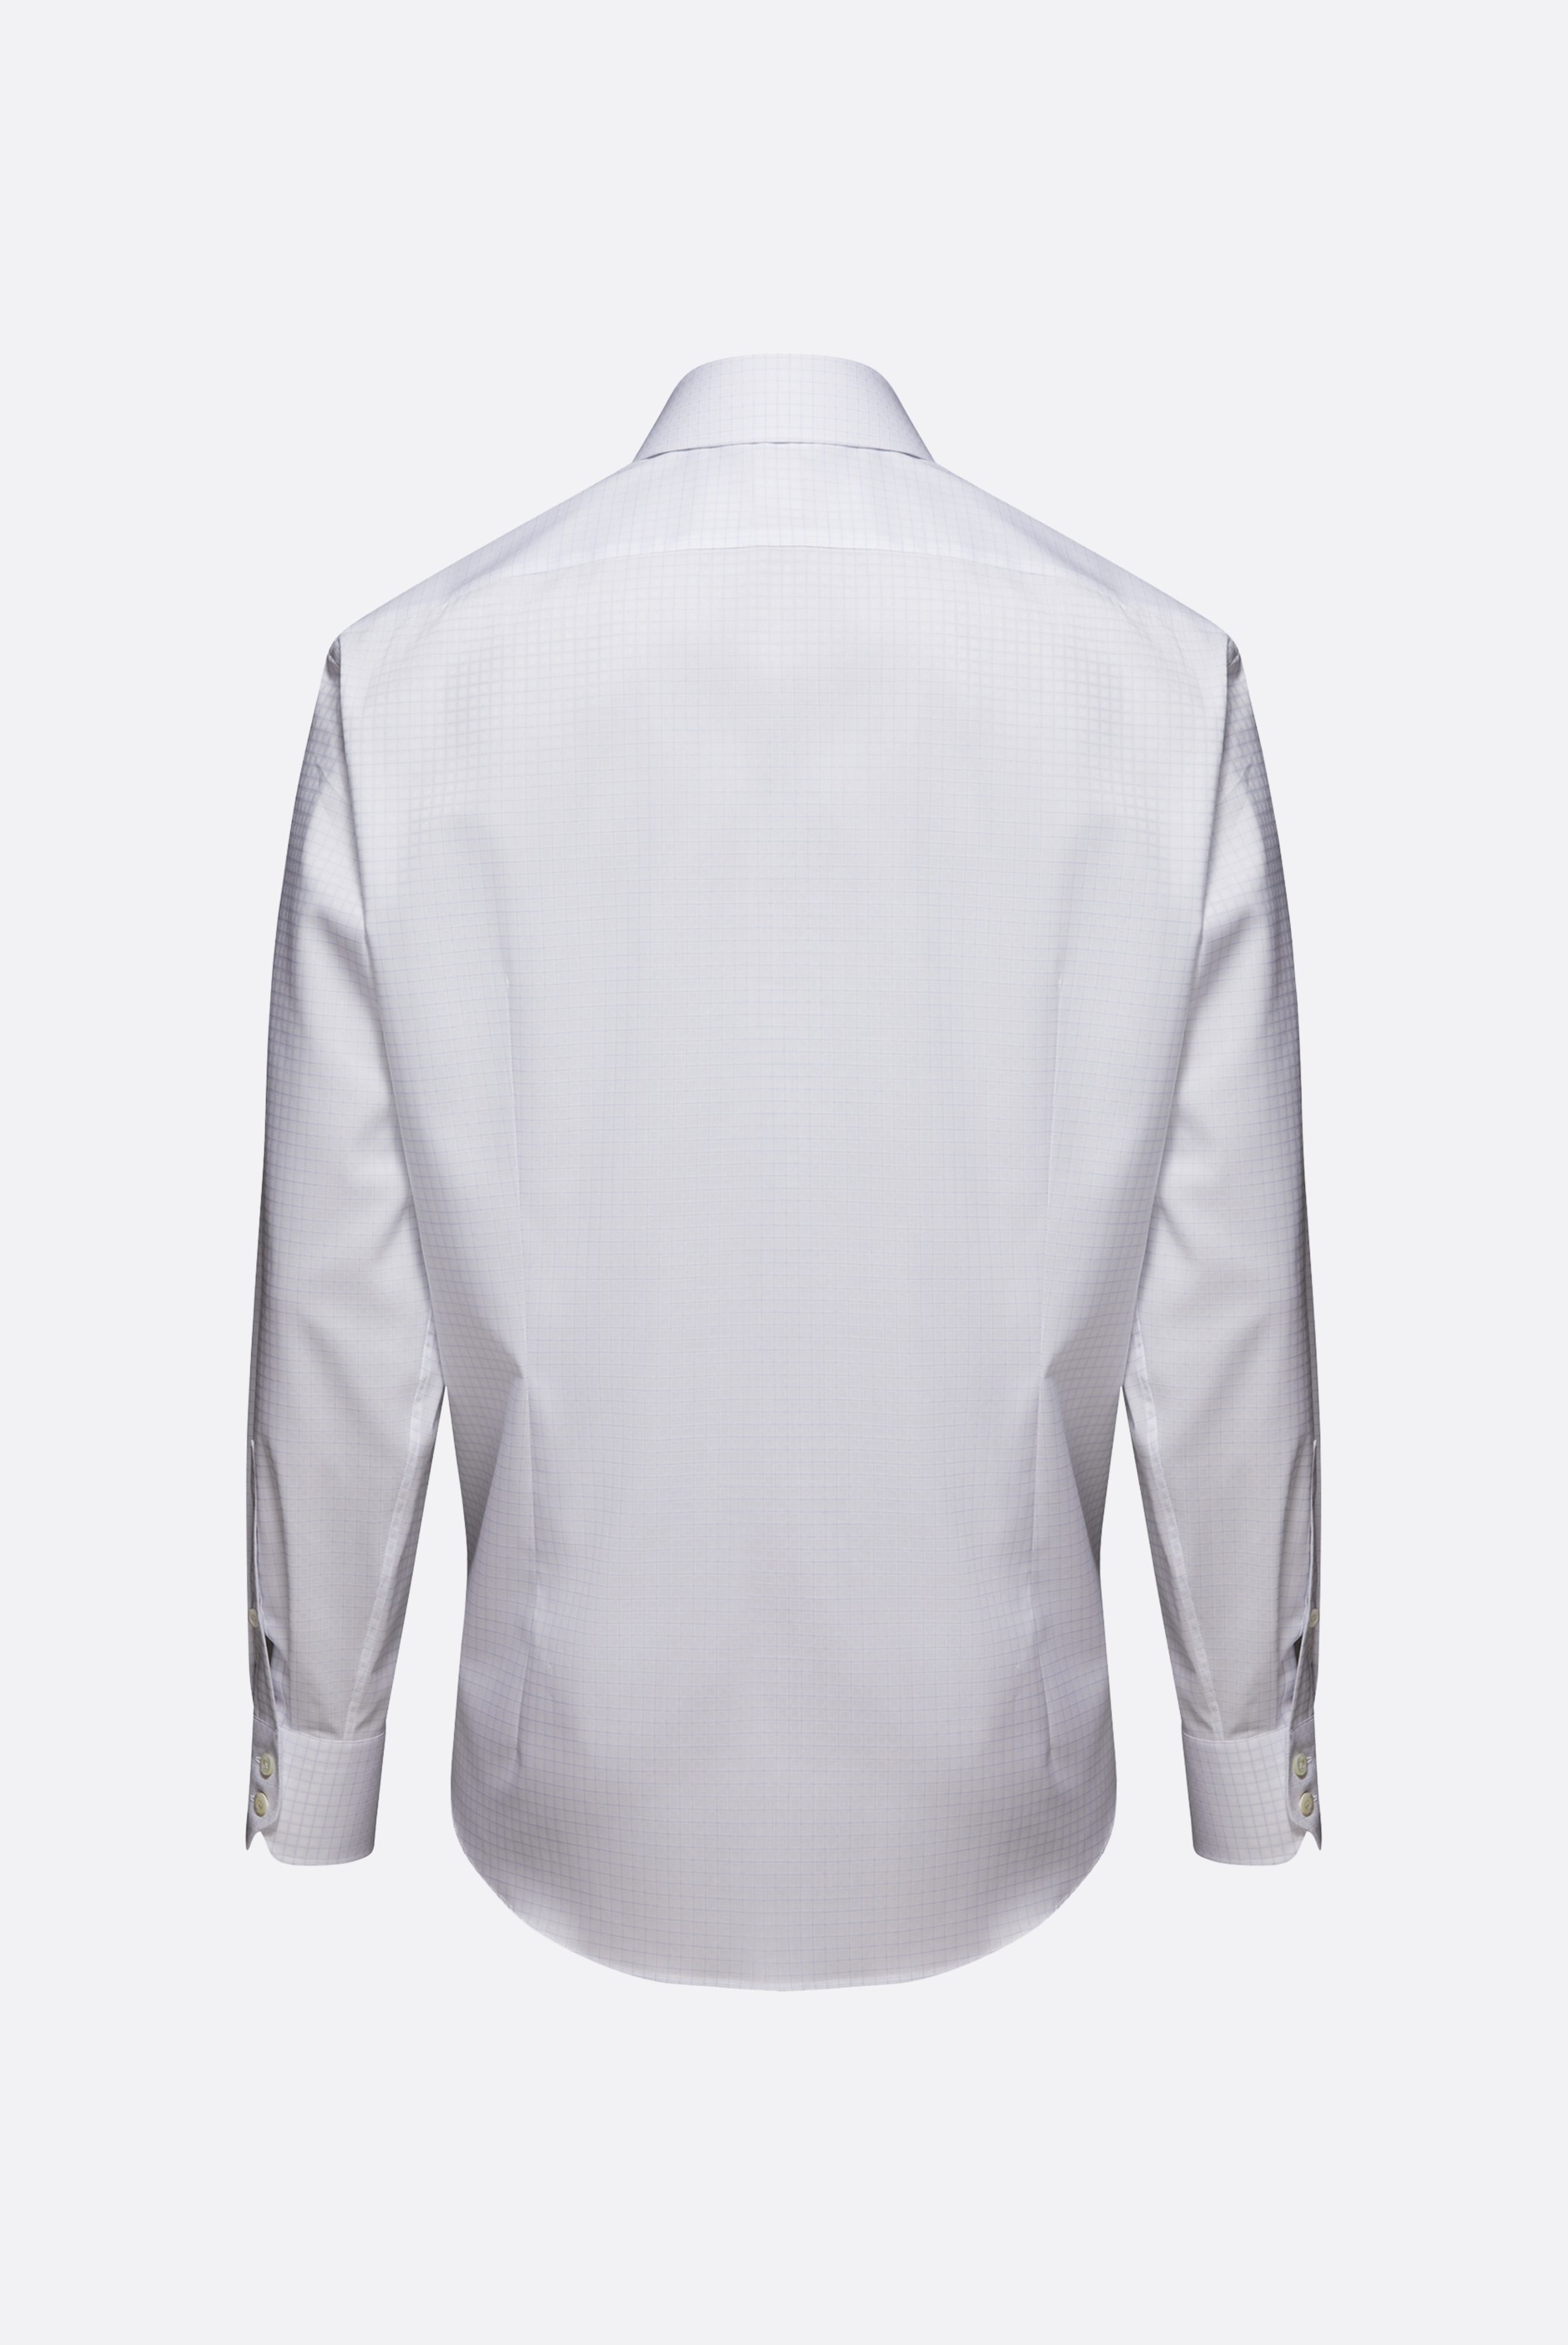 Bügelleichte Hemden+Bügelfreies Kariertes Twill-Hemd Tailor Fit+20.2020.BQ.161105.007.43